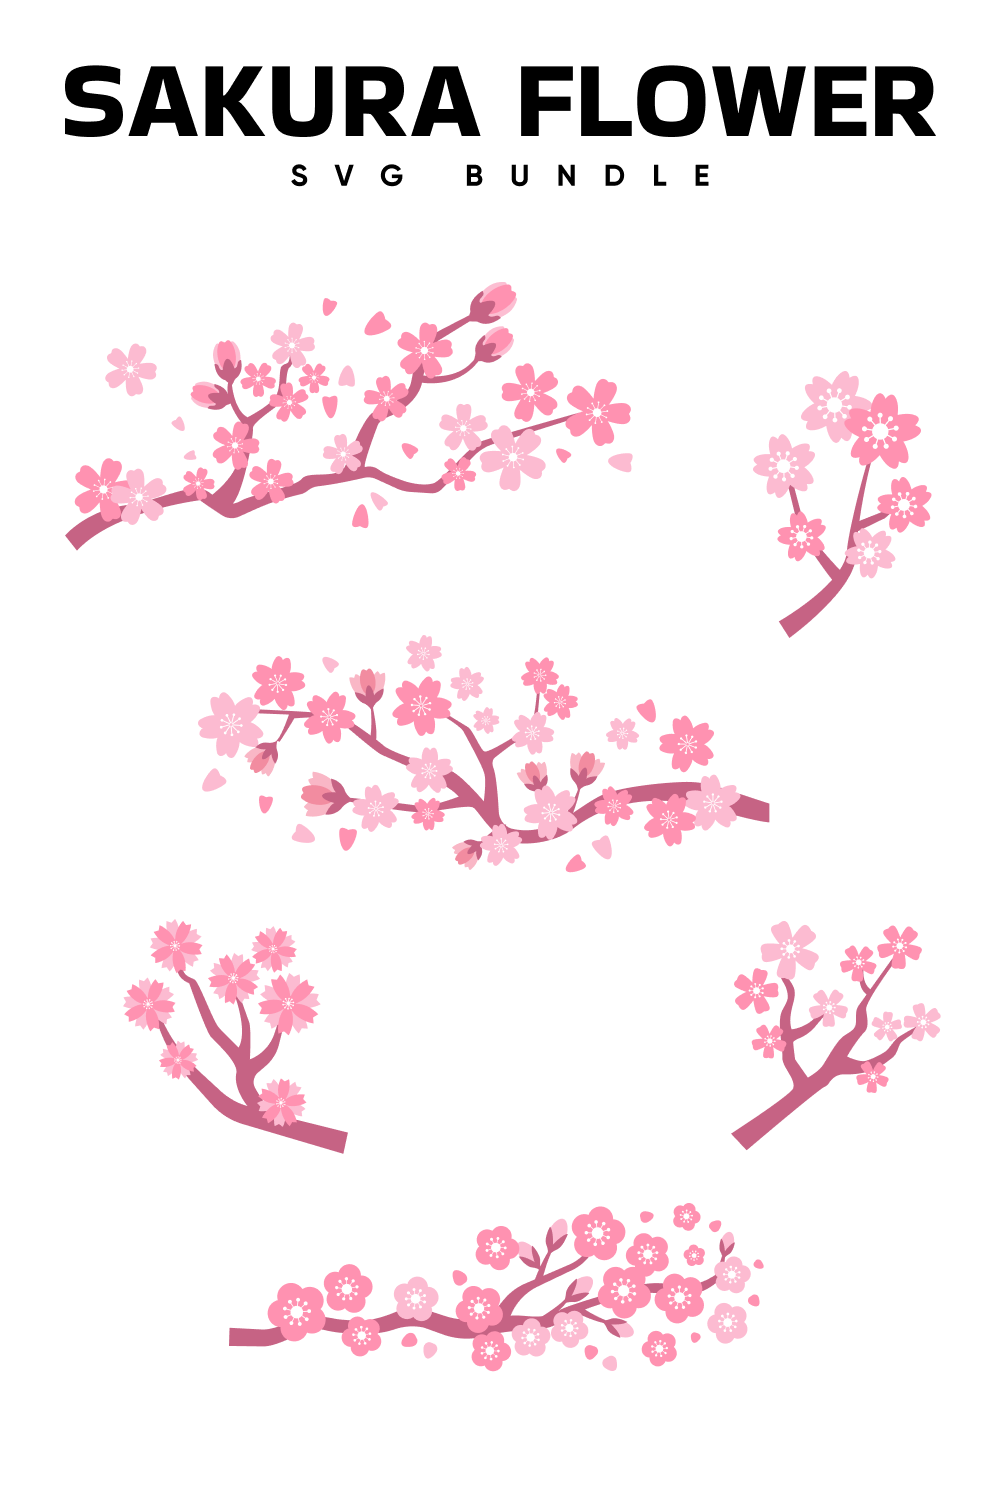 Sakura Flower Svg - Pinterest.